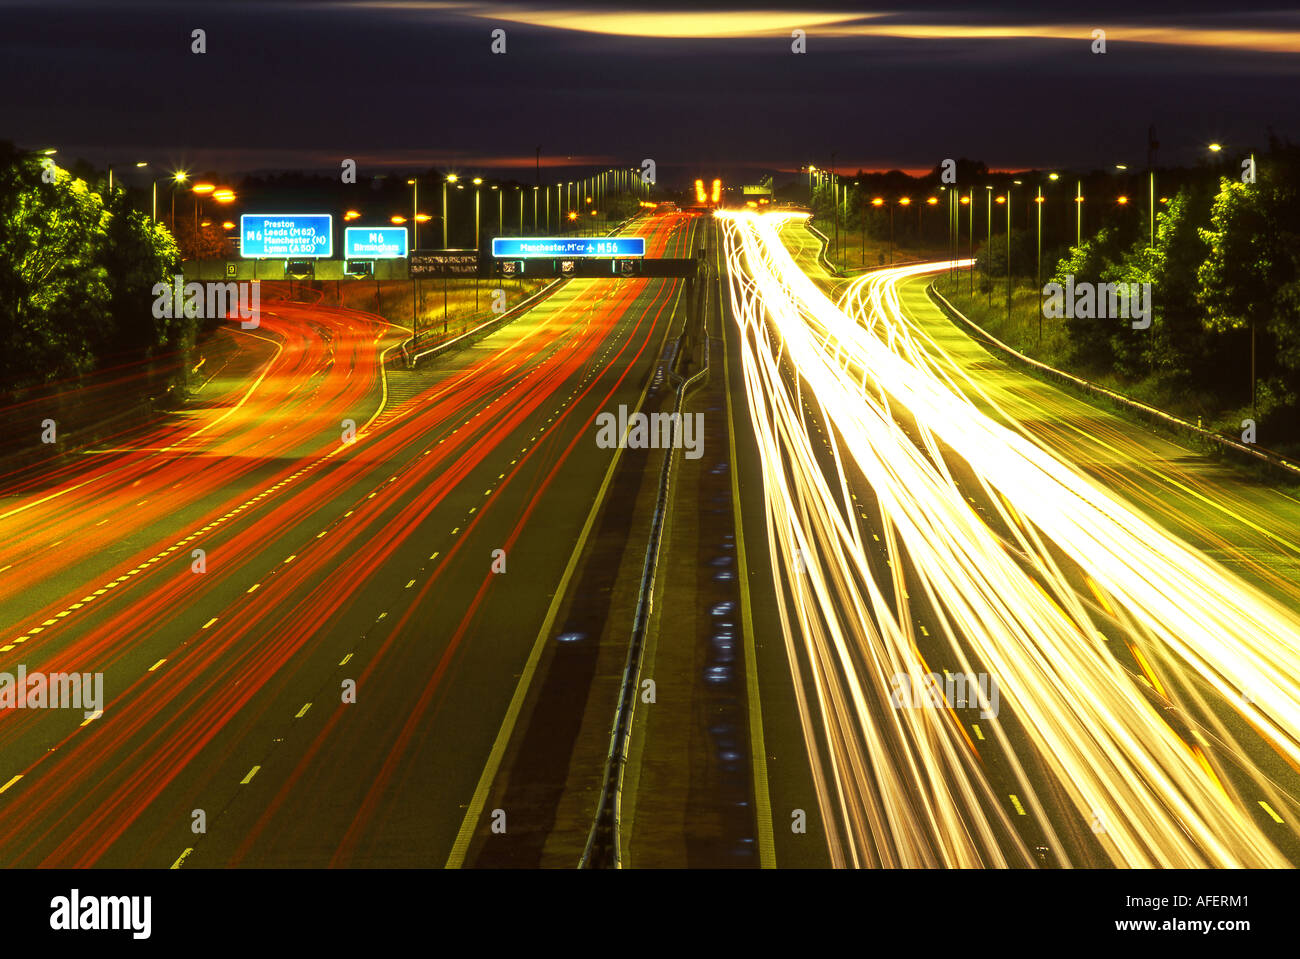 Rush Hour Traffic on the M56 Motorway at Night, Cheshire, England, UK Stock Photo